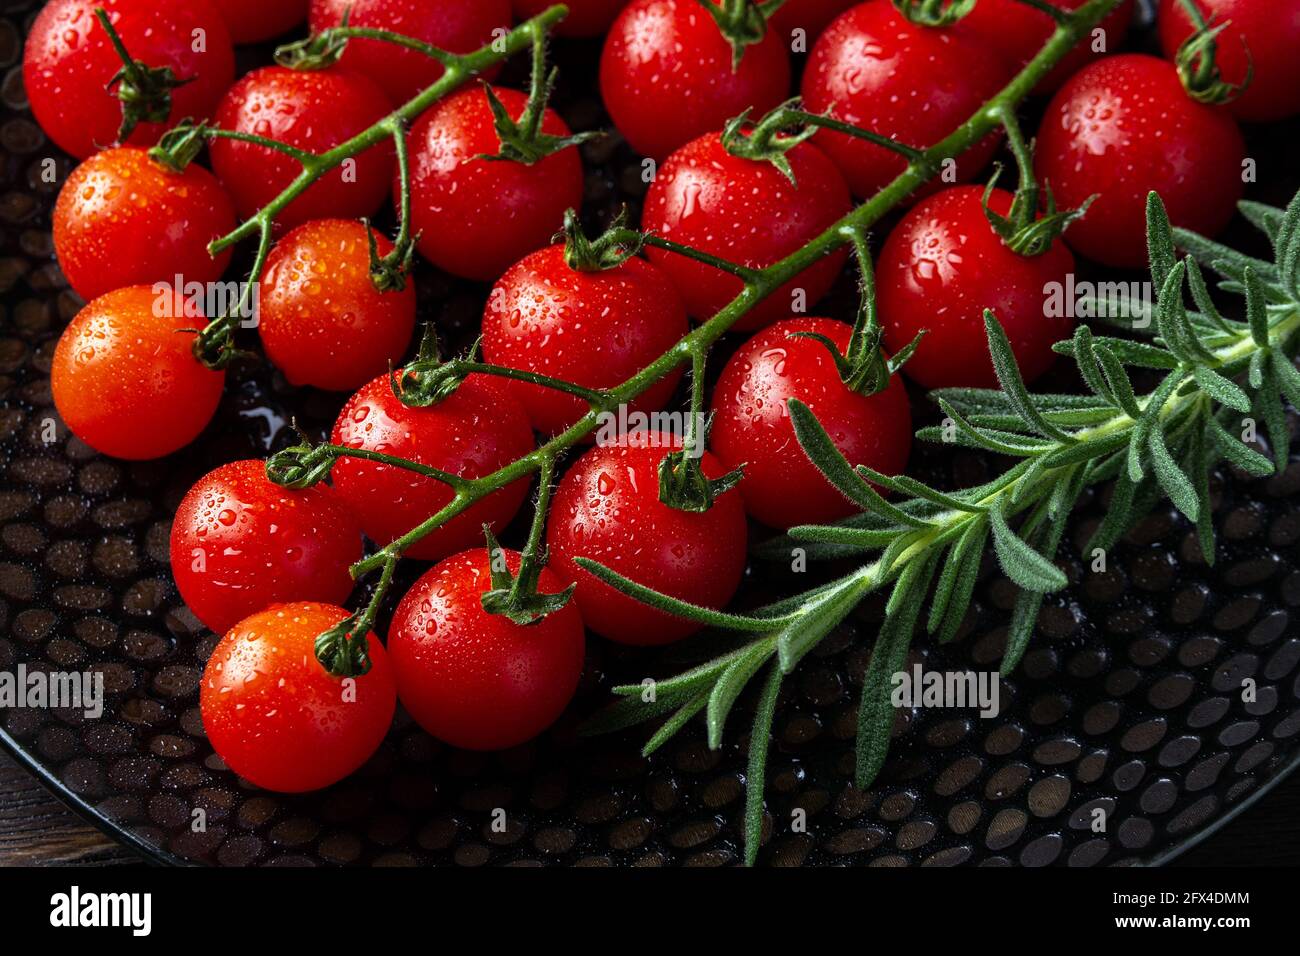 Pomodori ciliegini rossi maturi umidi sulla vite e sprig di rosmarino fresco su un piatto nero. Macro. Gocce d'acqua su un piccolo pomodoro rotondo. Freschezza, saporita Foto Stock